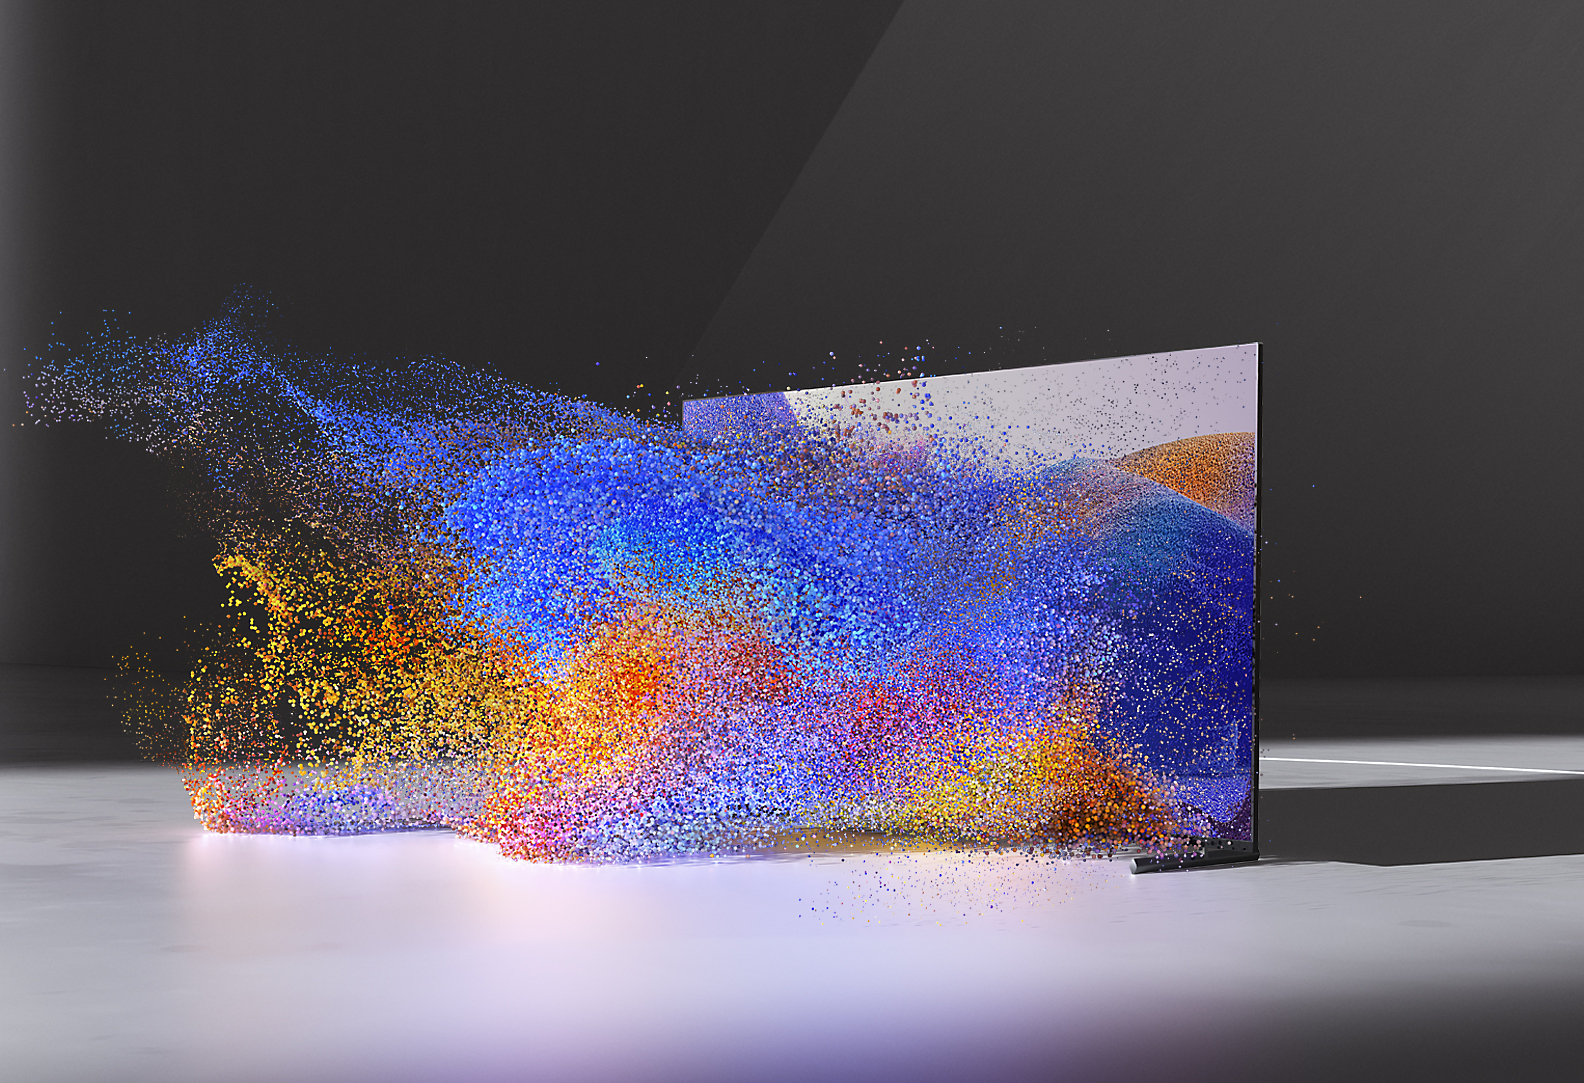 Televisor BRAVIA XR que muestra una imagen abstracta y colorida que pareciera salir de la pantalla en cascada